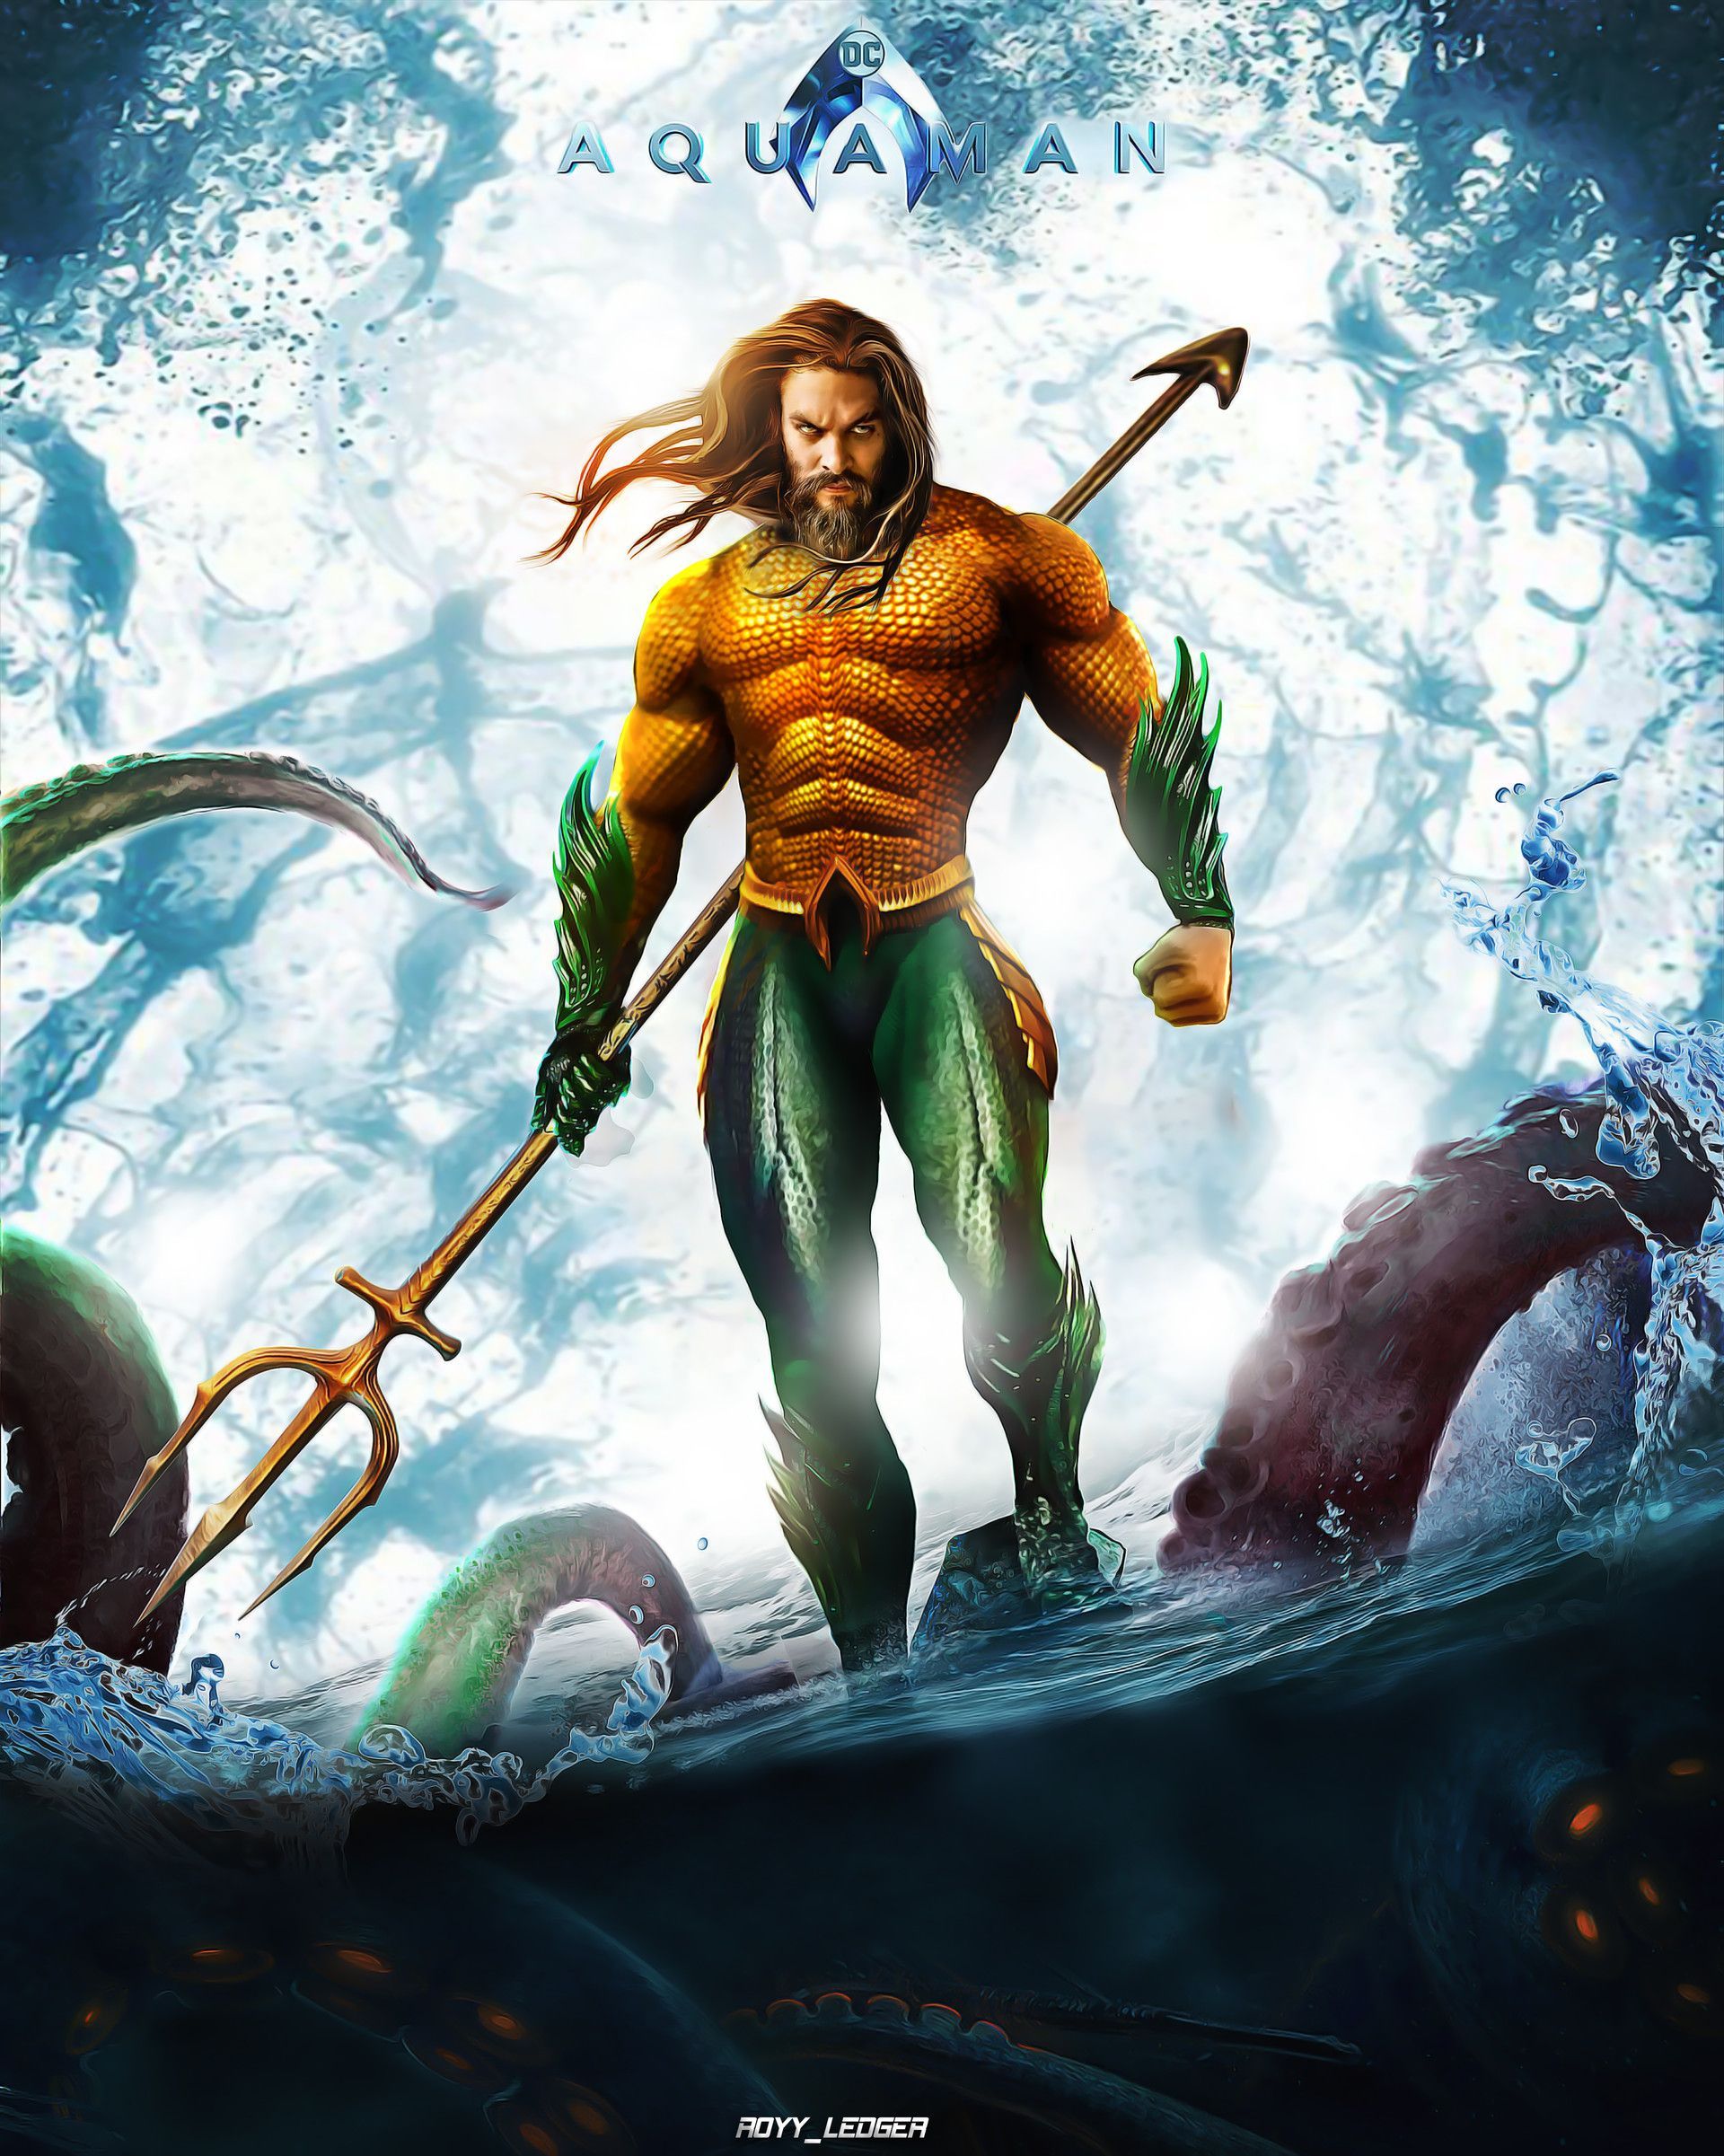 Aquaman suit, Royy _Ledger. Aquaman dc comics, Aquaman, Dc comics characters